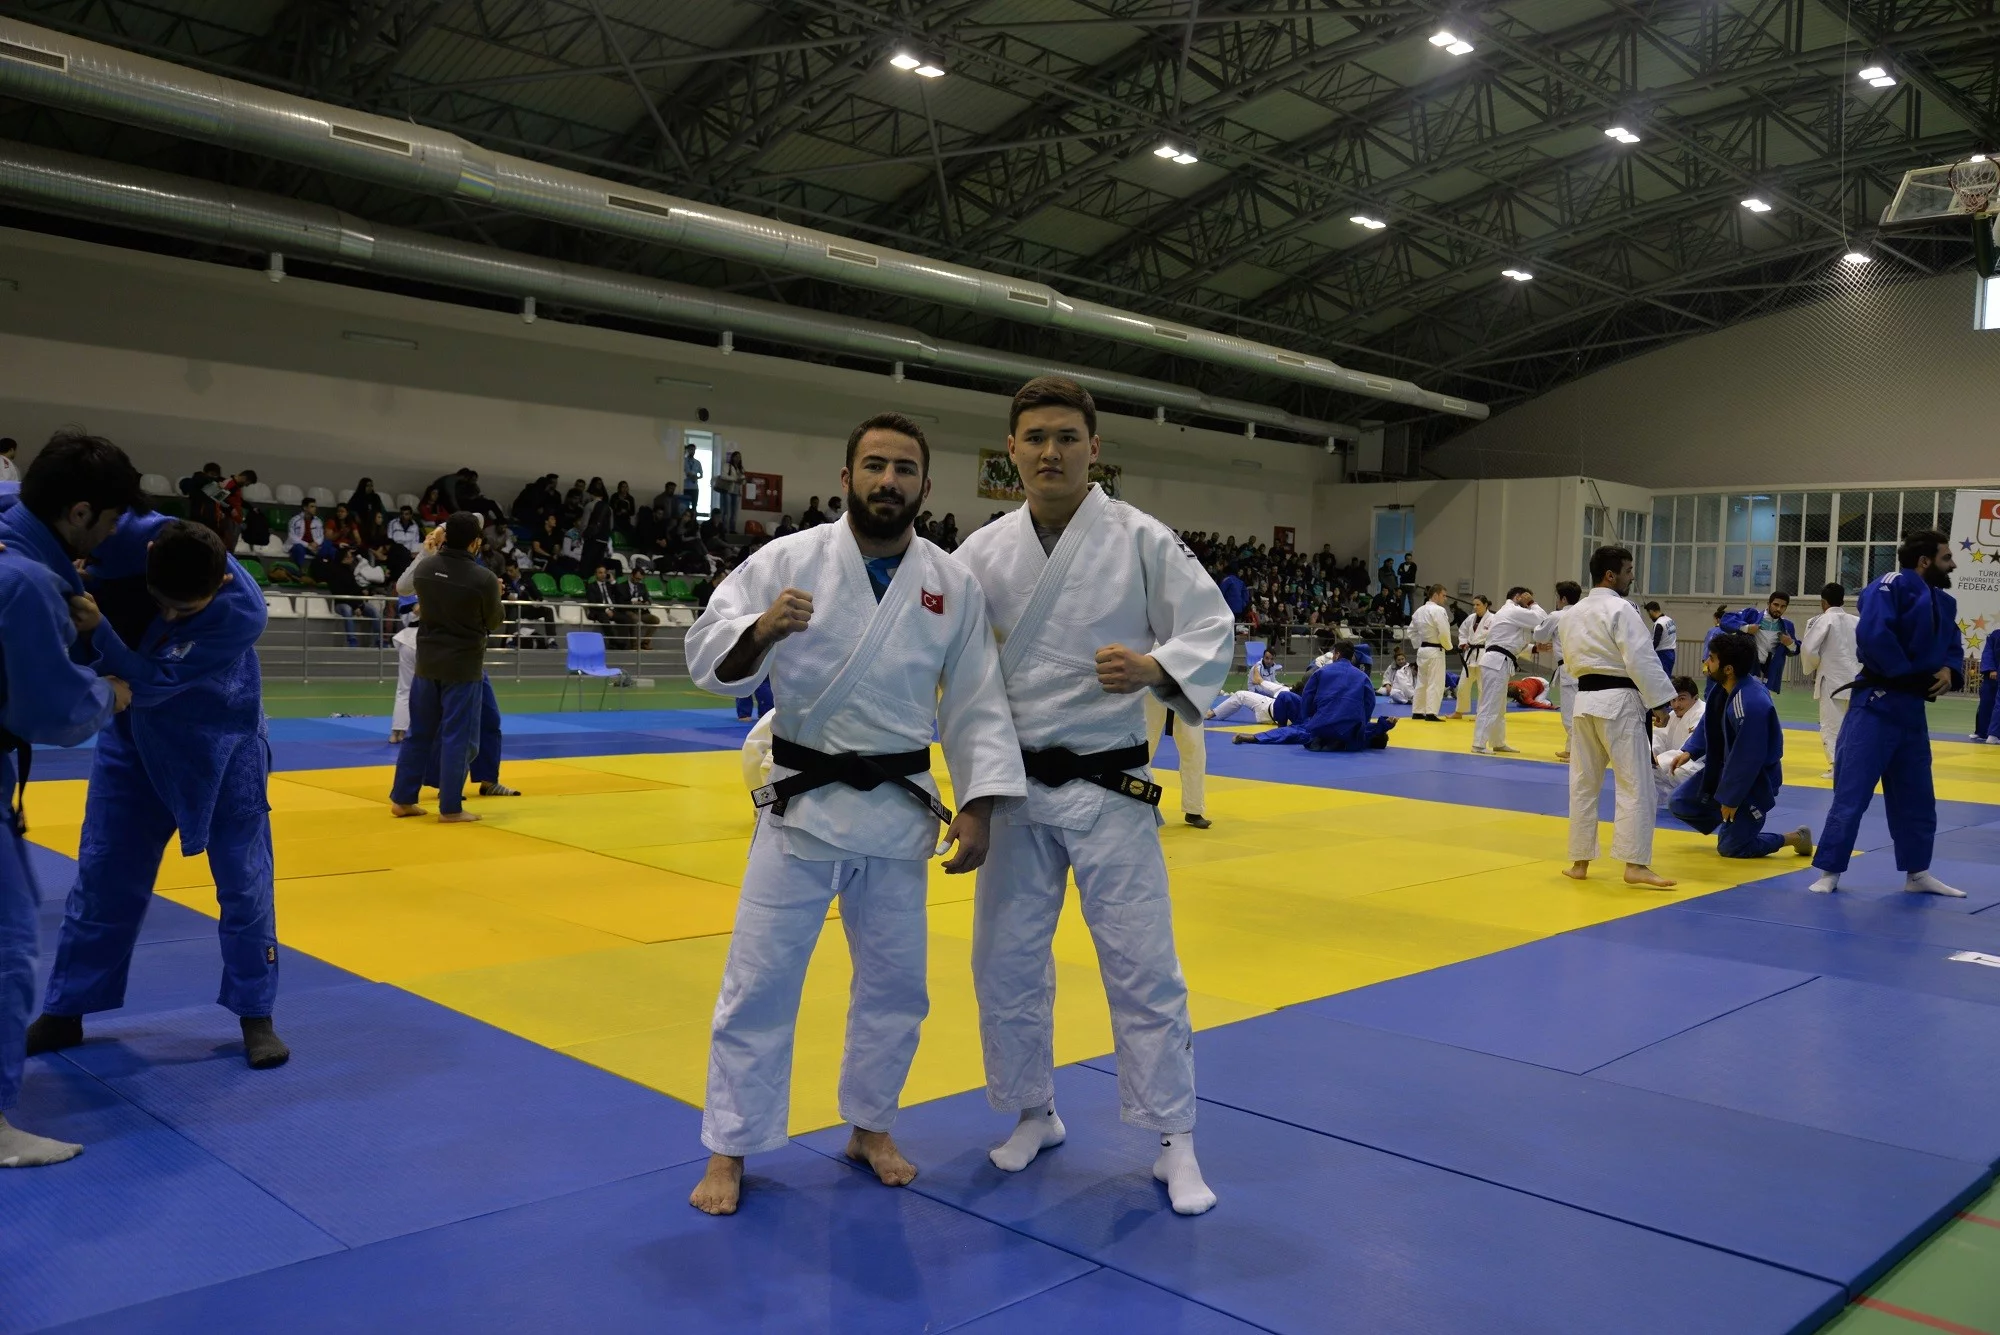 Judonun kalbi Uludağ Üniversitesi’nde atıyor